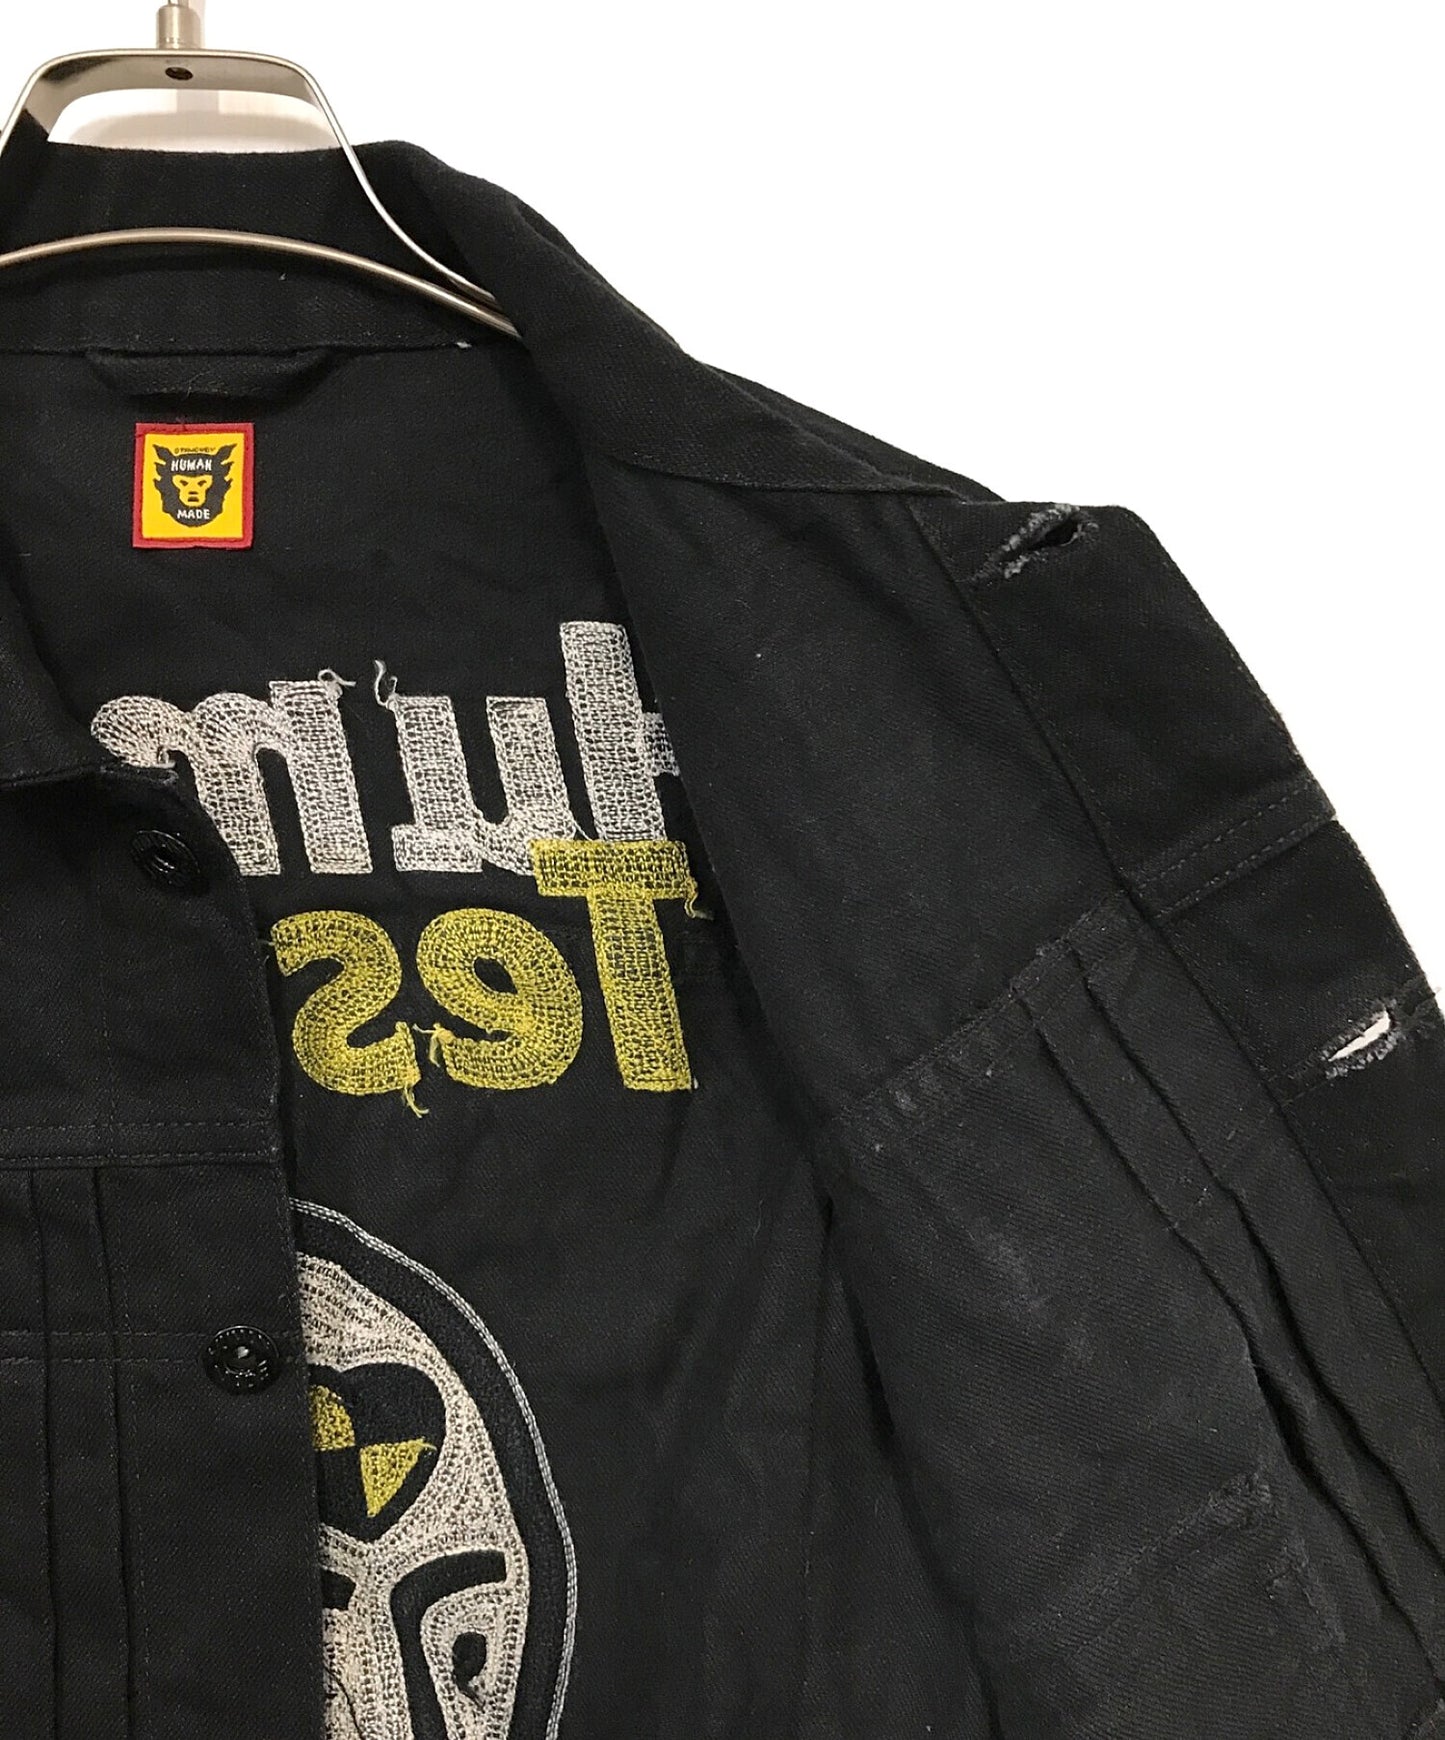 인간 만든 × A $ AP Rocky Human Testing Denim Jacket XX23JK008